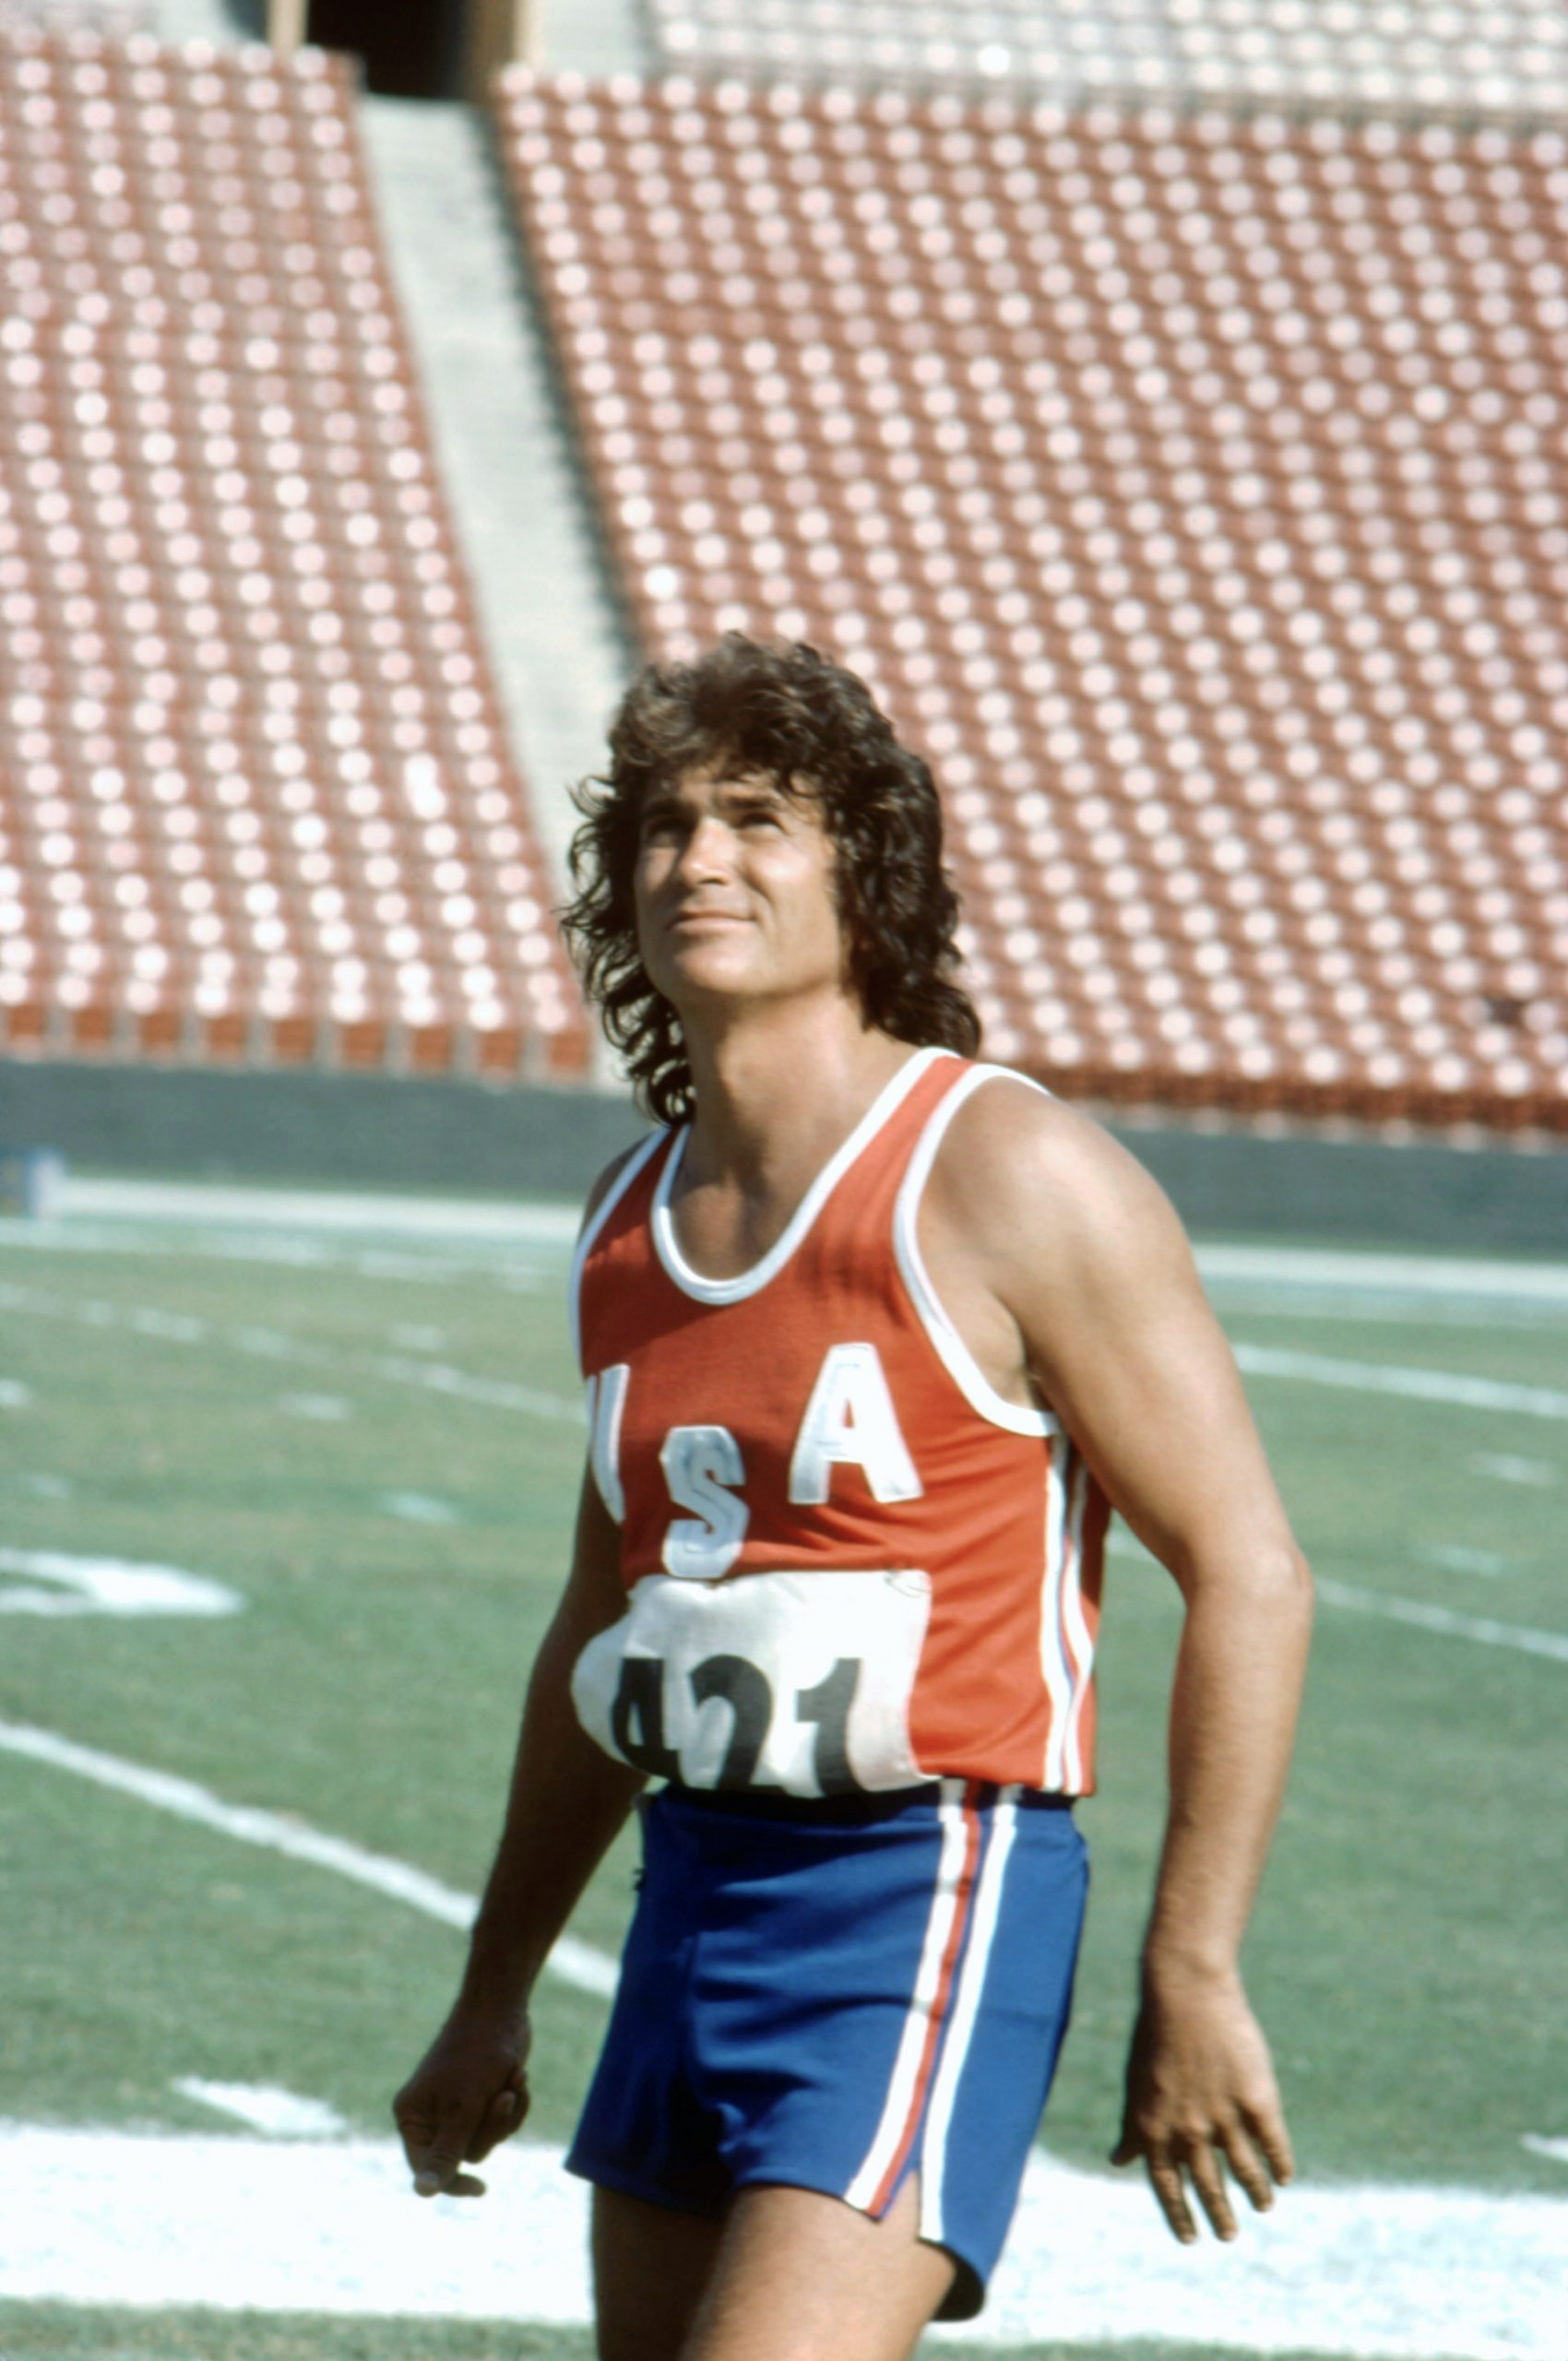 The Loneliest Runner 1976